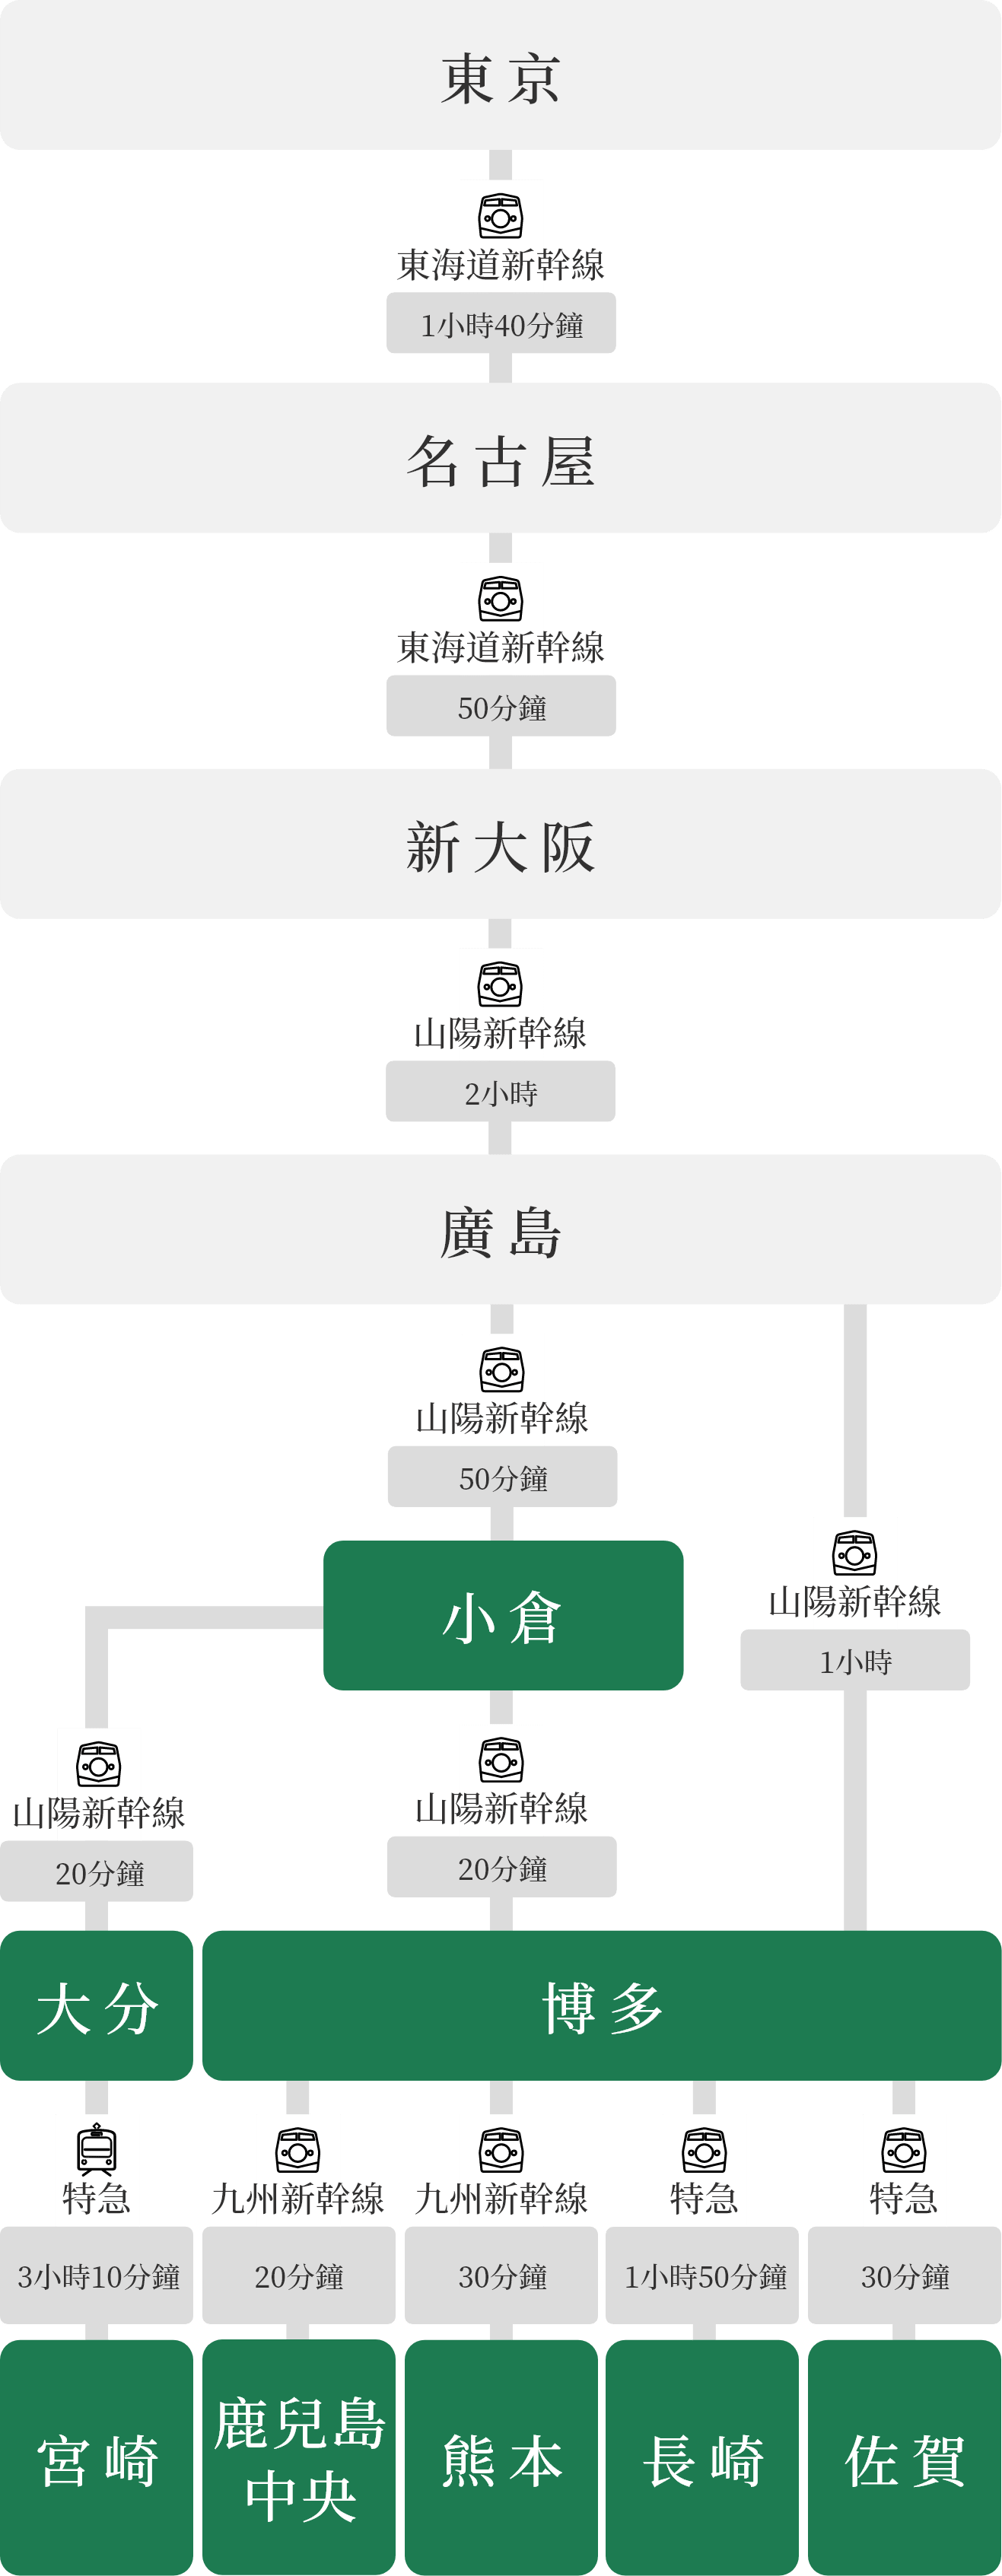 圖：從東京到九州的火車縱向存取地圖